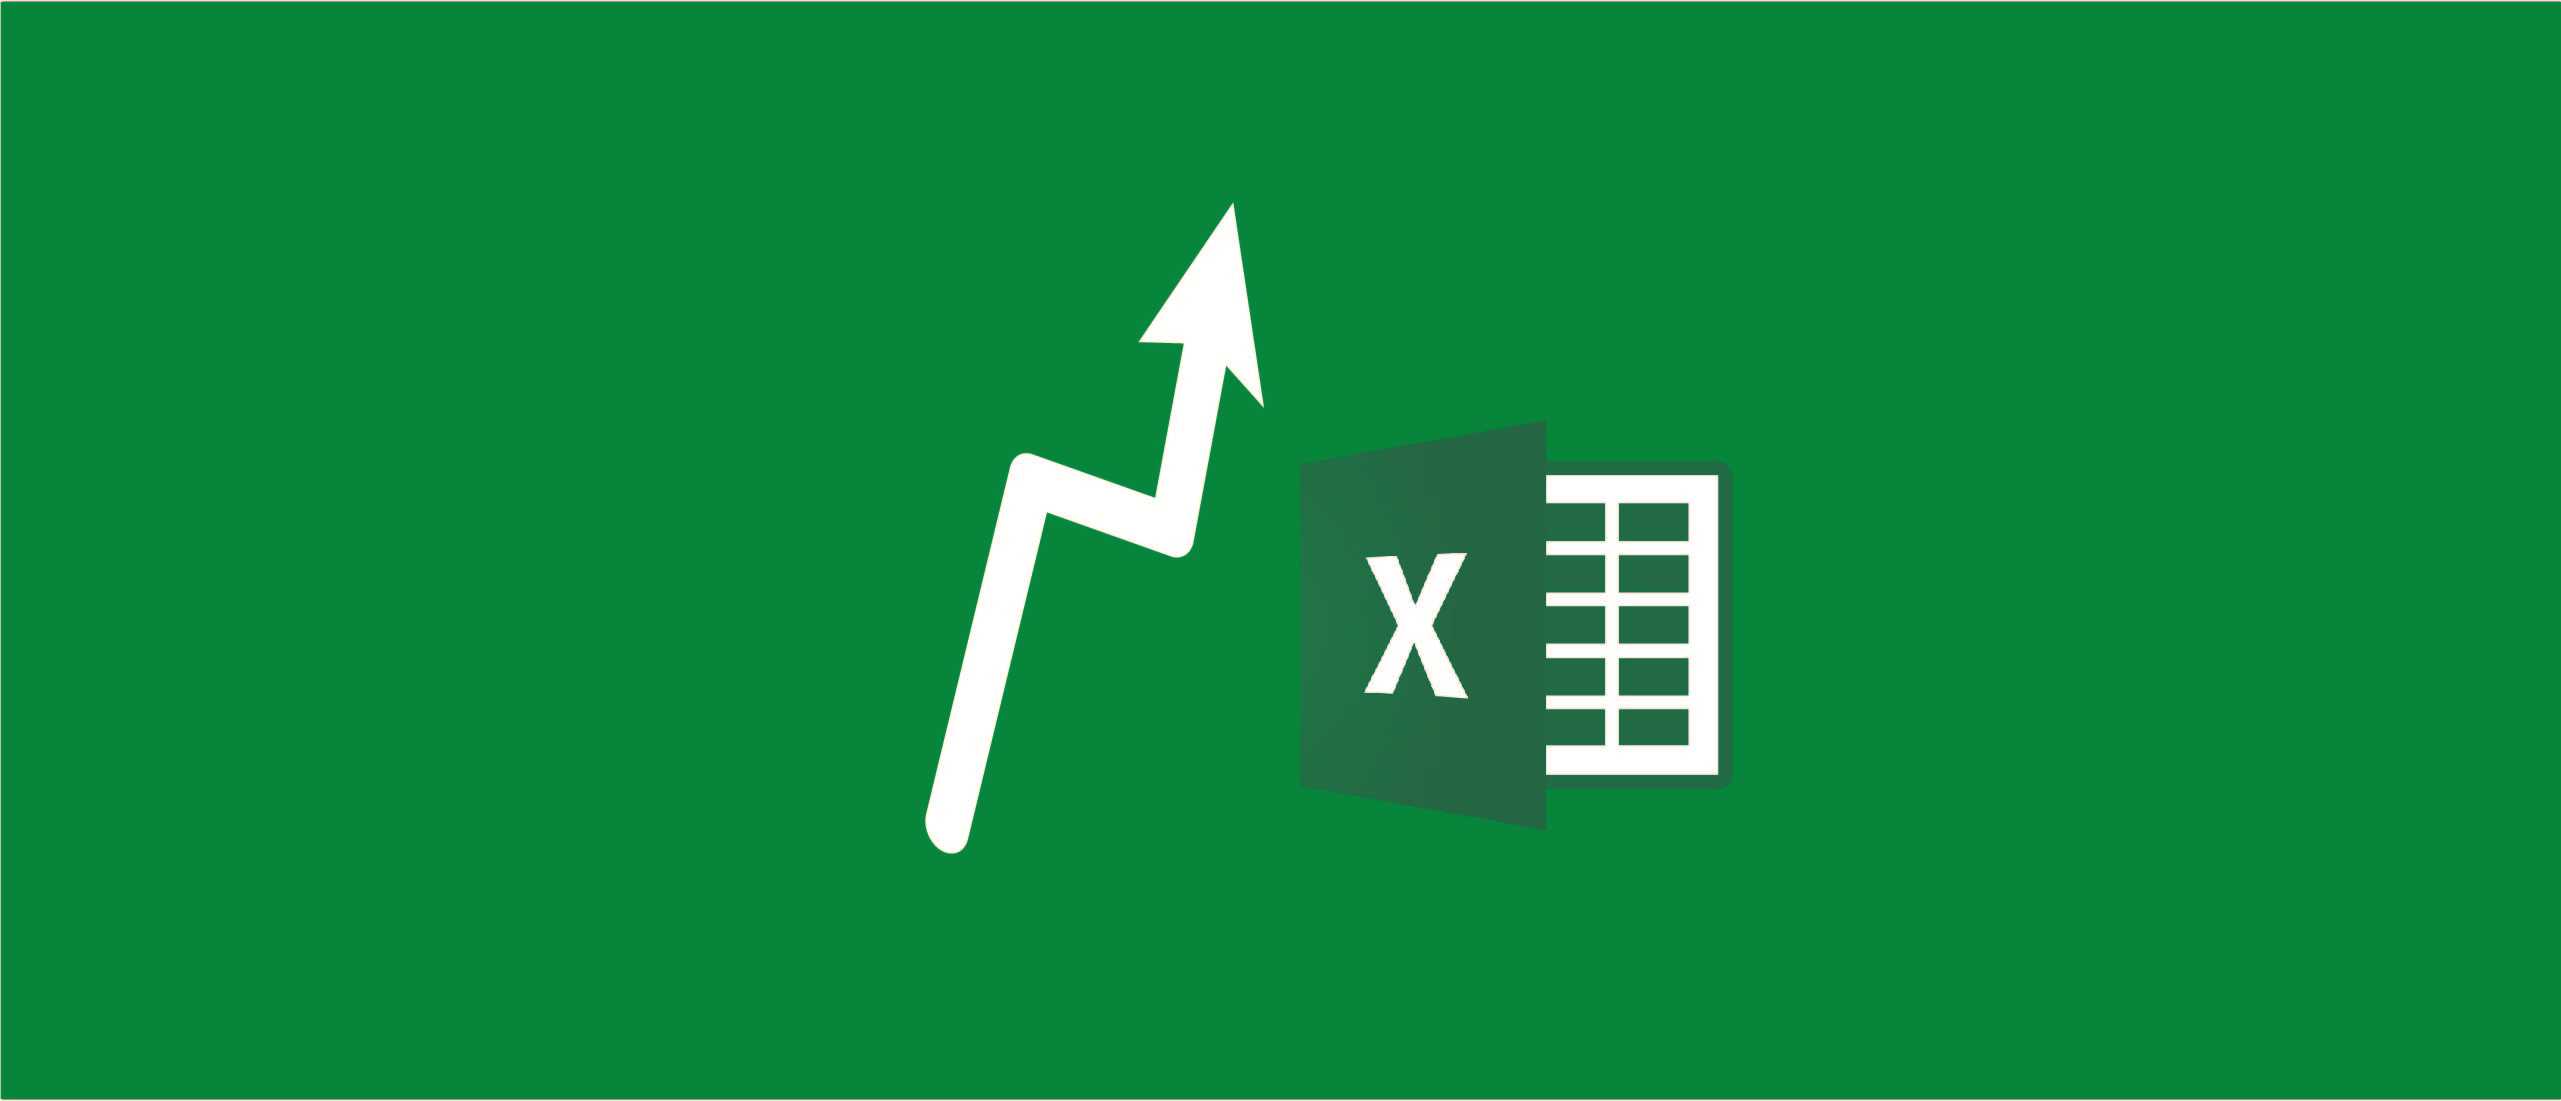 Excel - Làm việc tăng năng suất